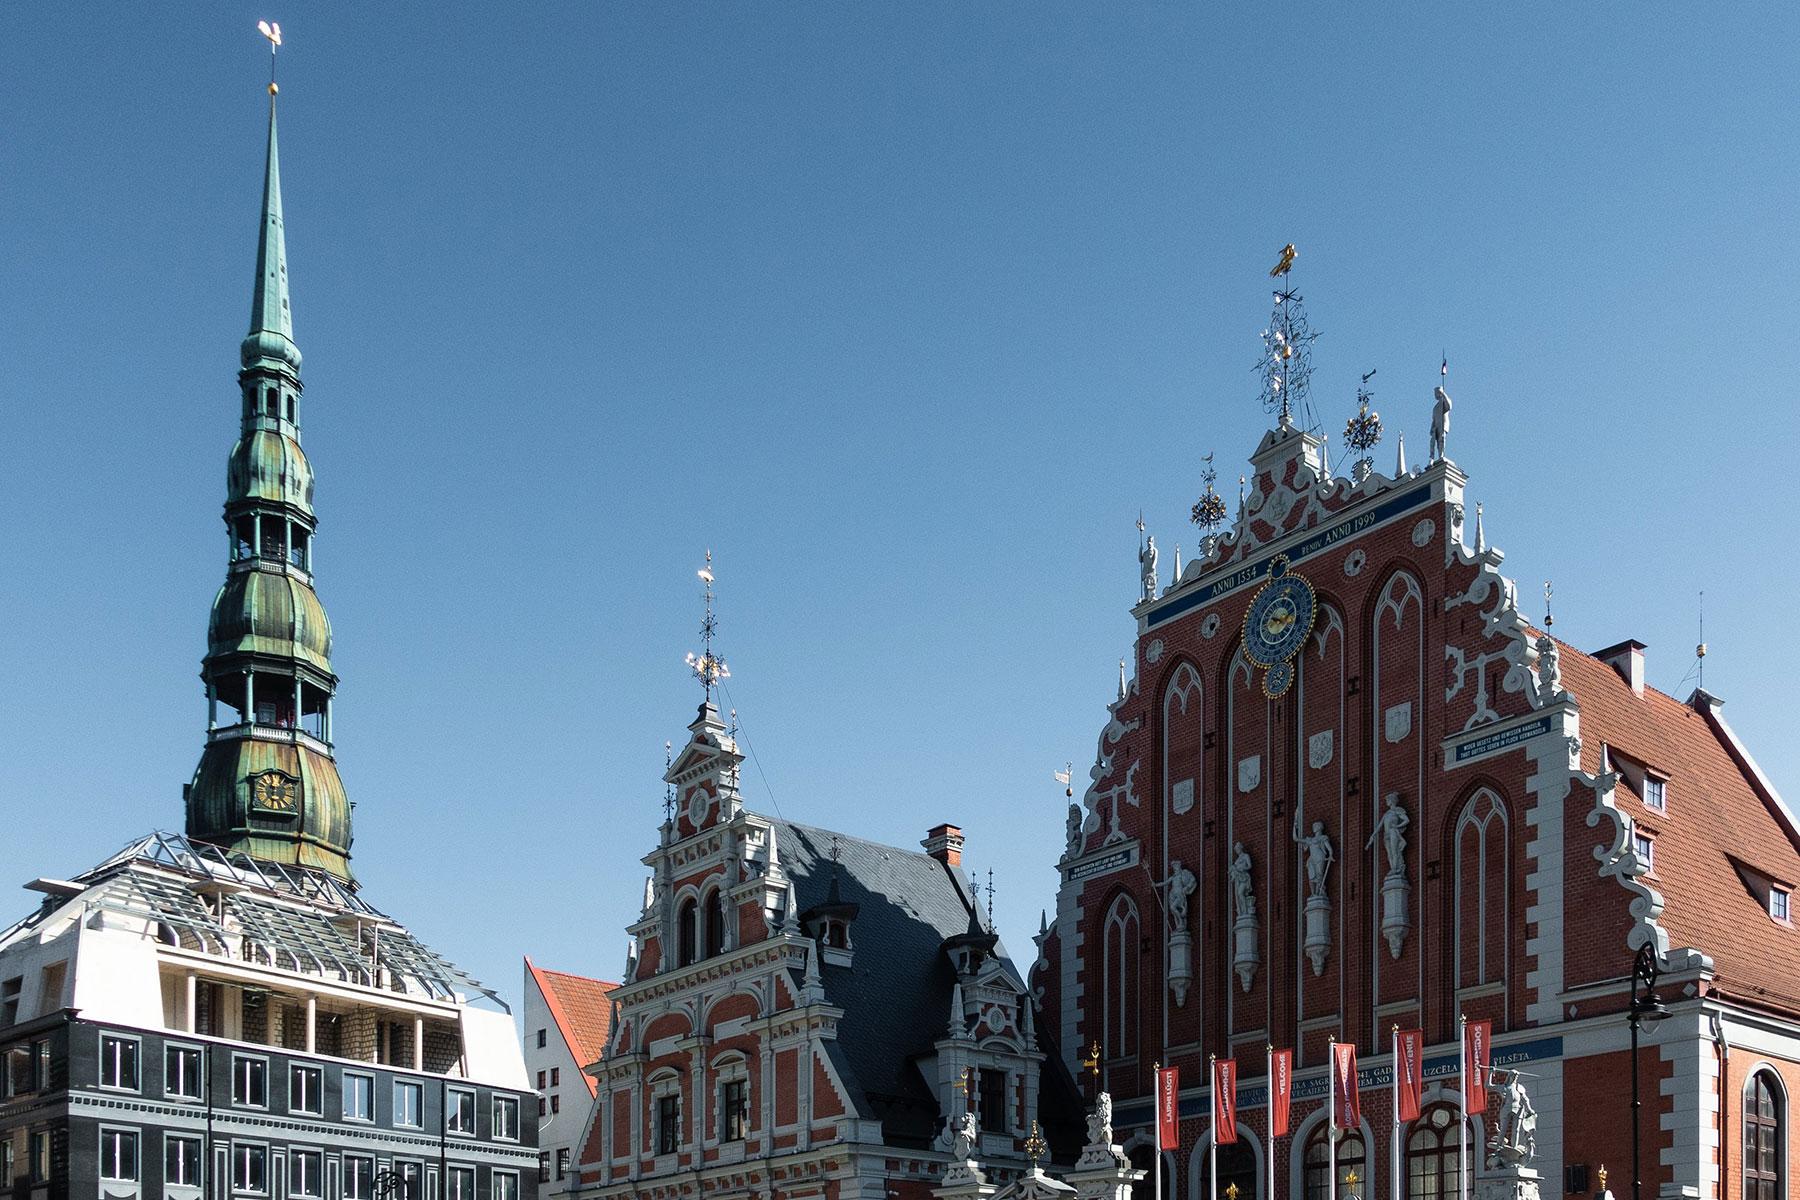 Das Stadtzentrum von Riga mit dem Turm der St. Petri-Kirche auf der linken Seite. Foto: Martin Kleppe, Unsplash